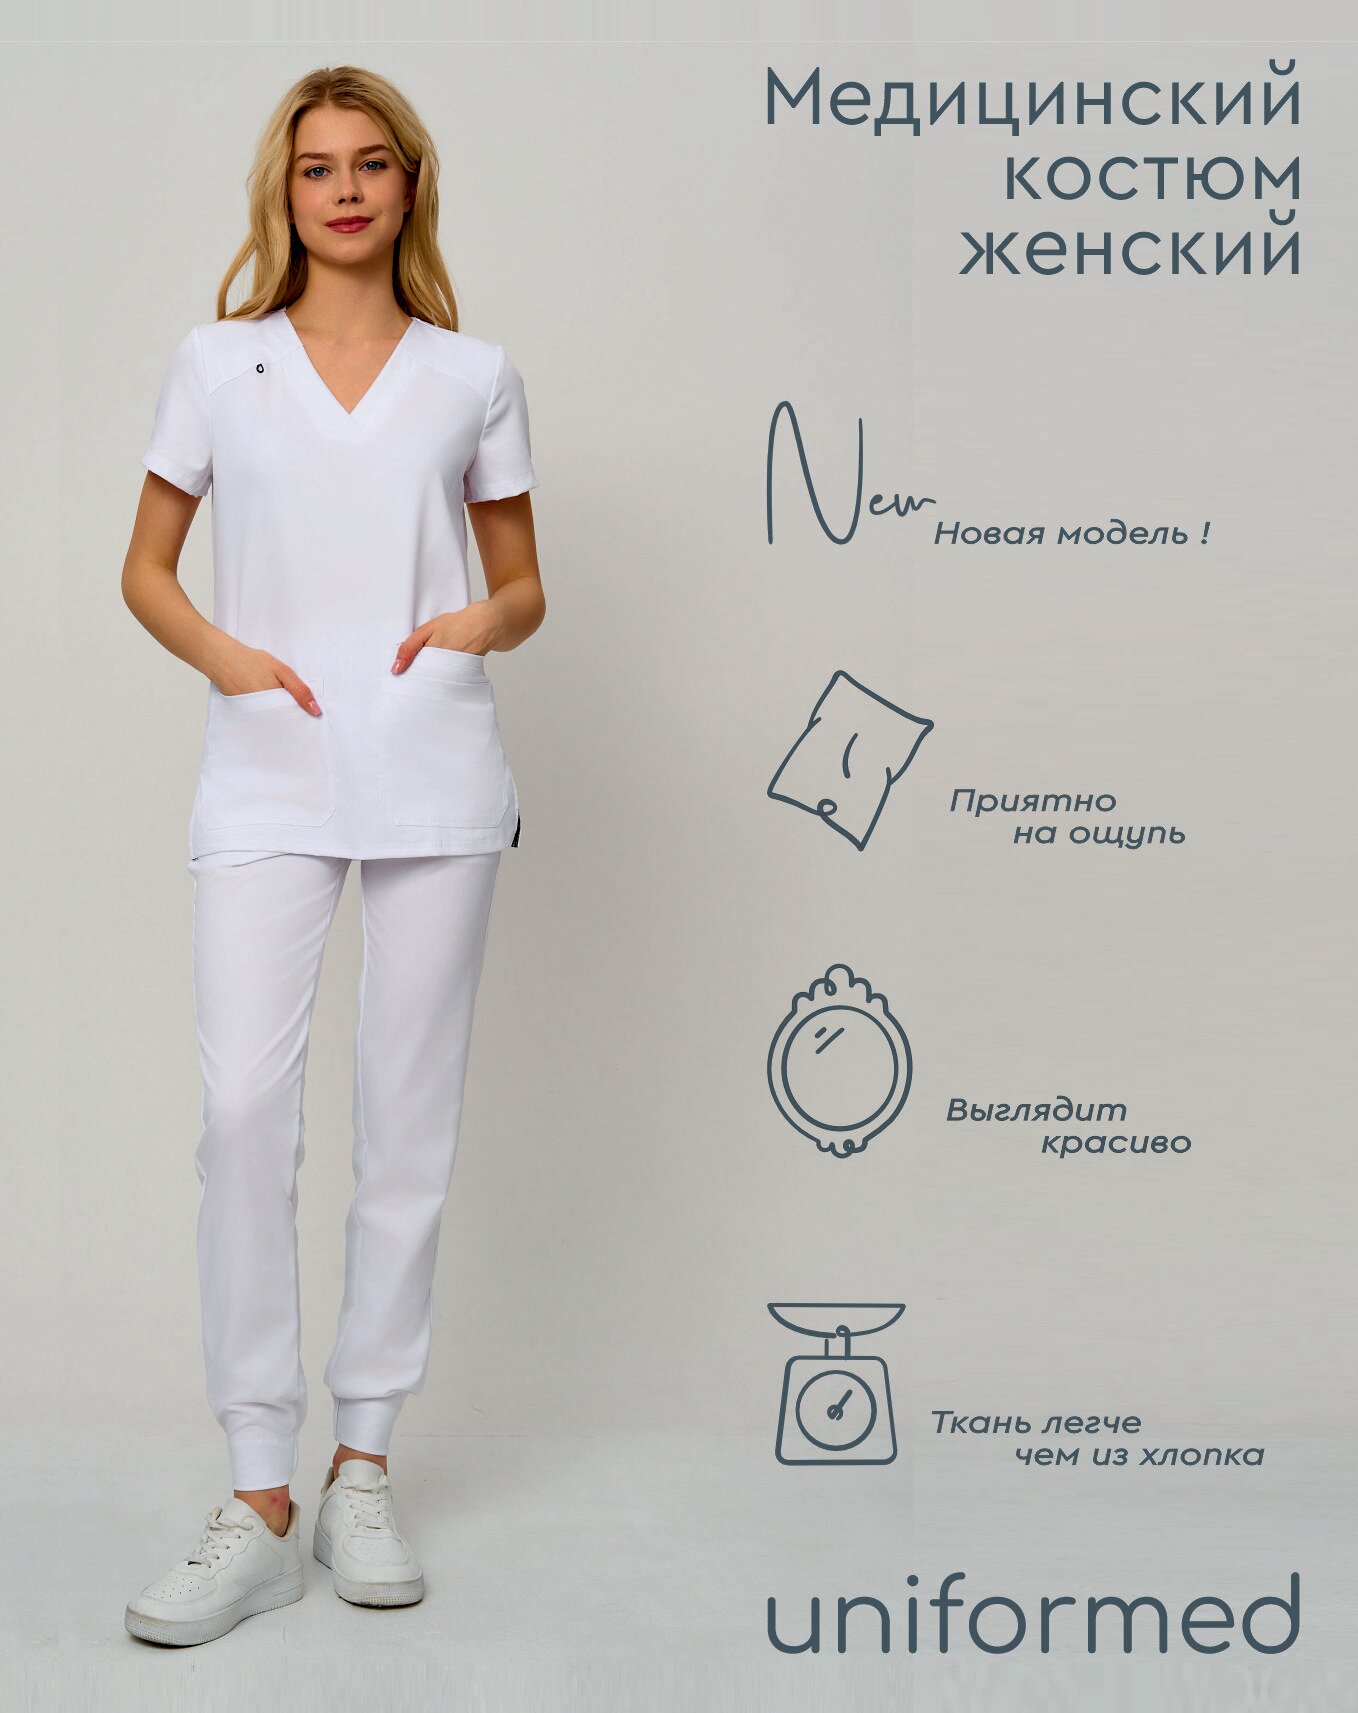 Медицинский женский костюм 419.5.1 Uniformed, ткань вискоза стрейч, рукав короткий, цвет белый, отделка черная, размер 48